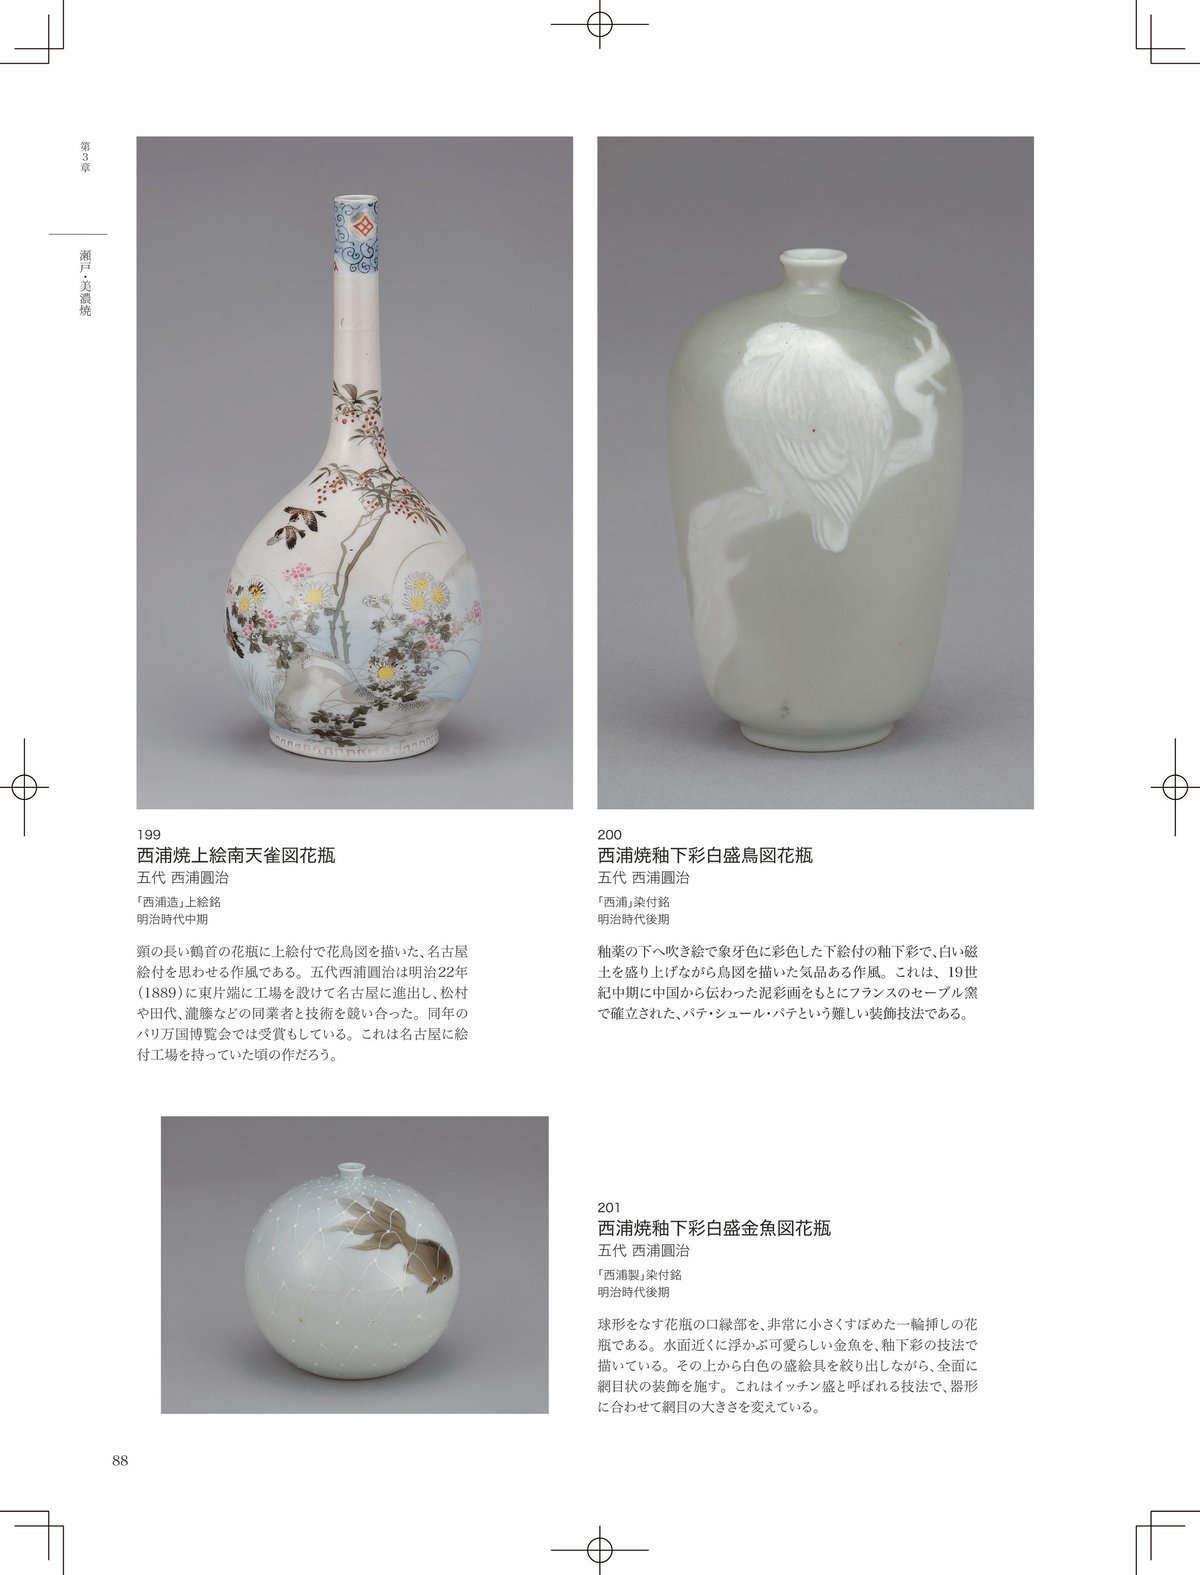 ー横山美術館所蔵品・明治以降輸出された陶磁器を中心にー　美・技の世界　近代陶磁器　横山美術館